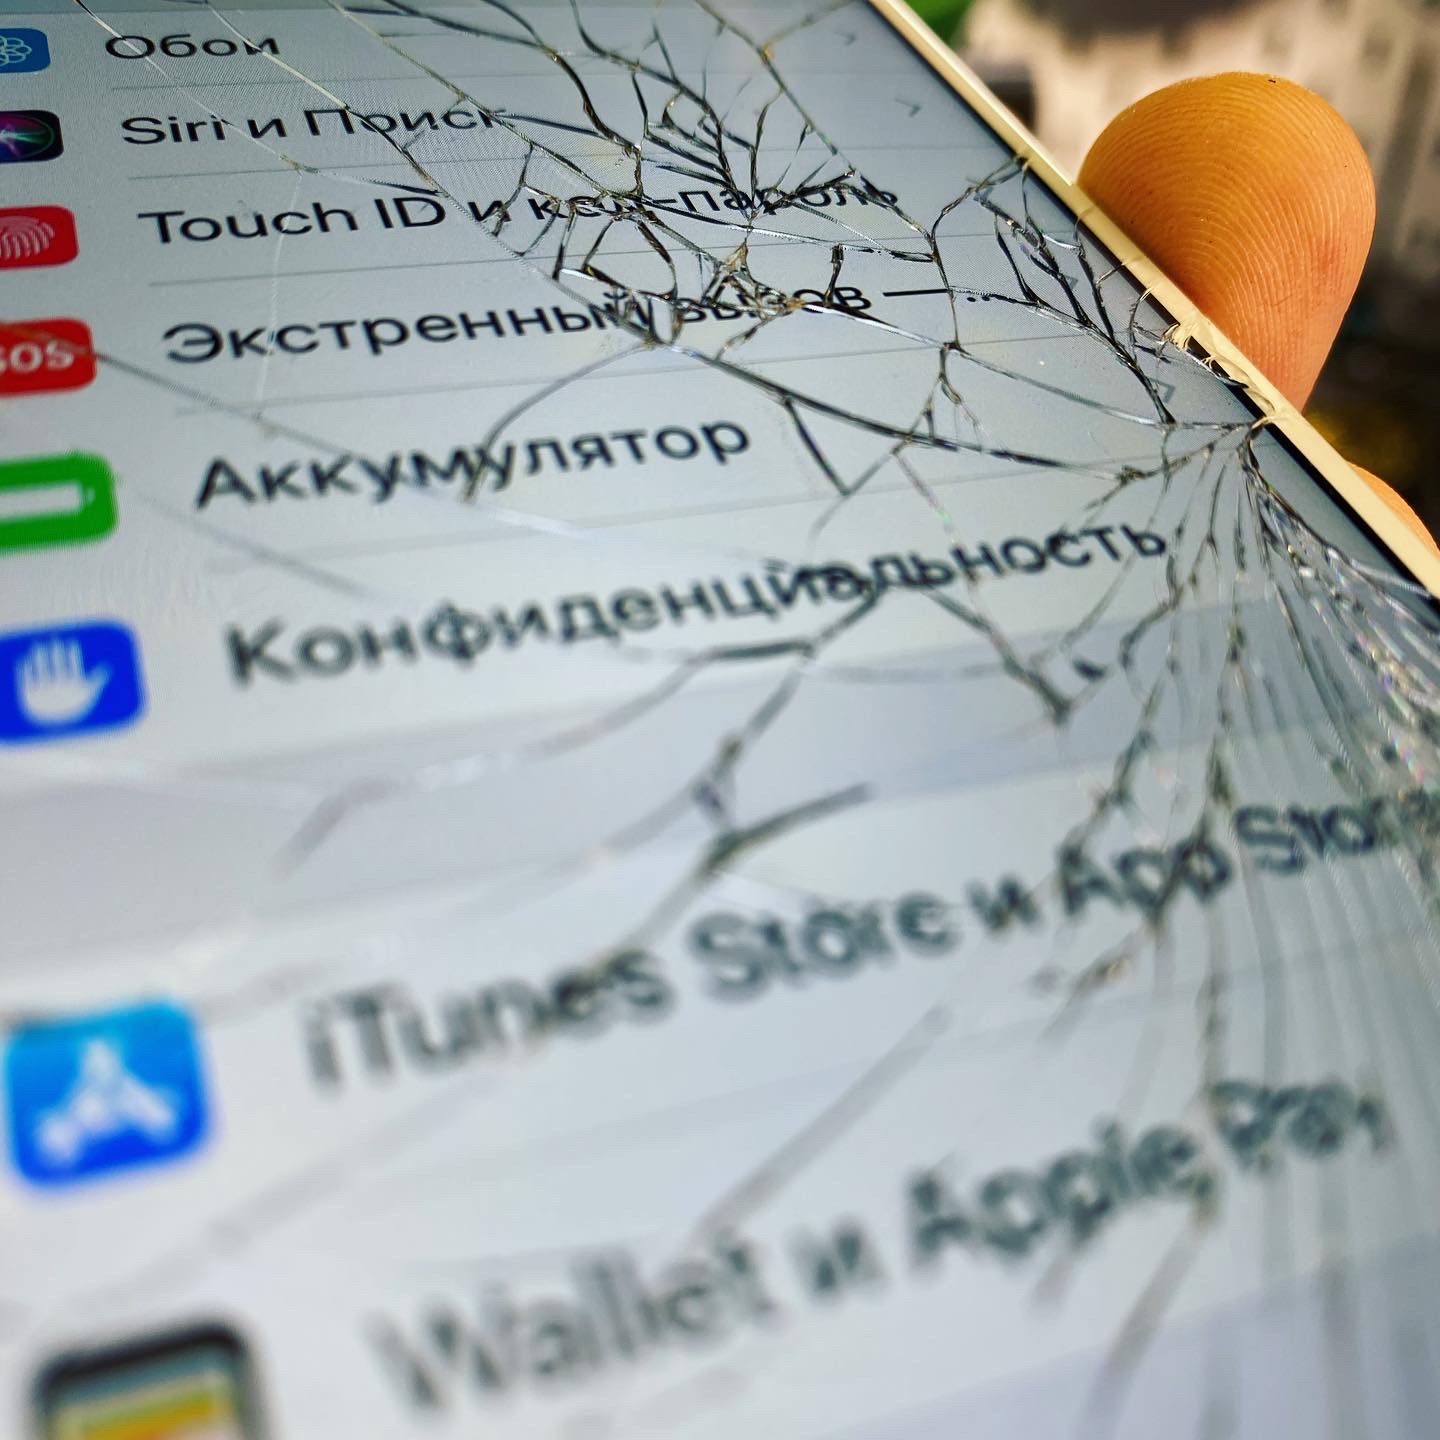 Как определить что у iPhone разбито только стекло?